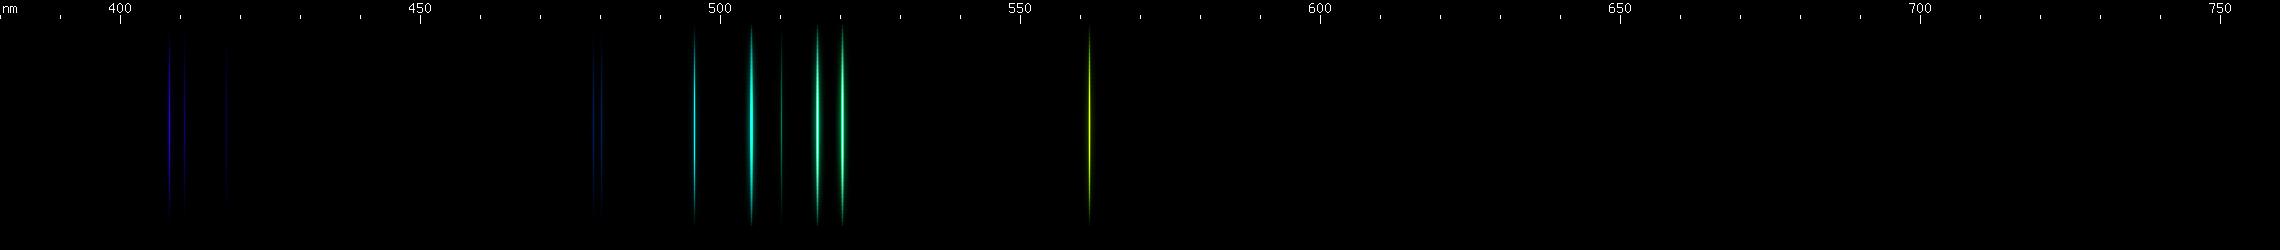 Spectral Lines of Einsteinium